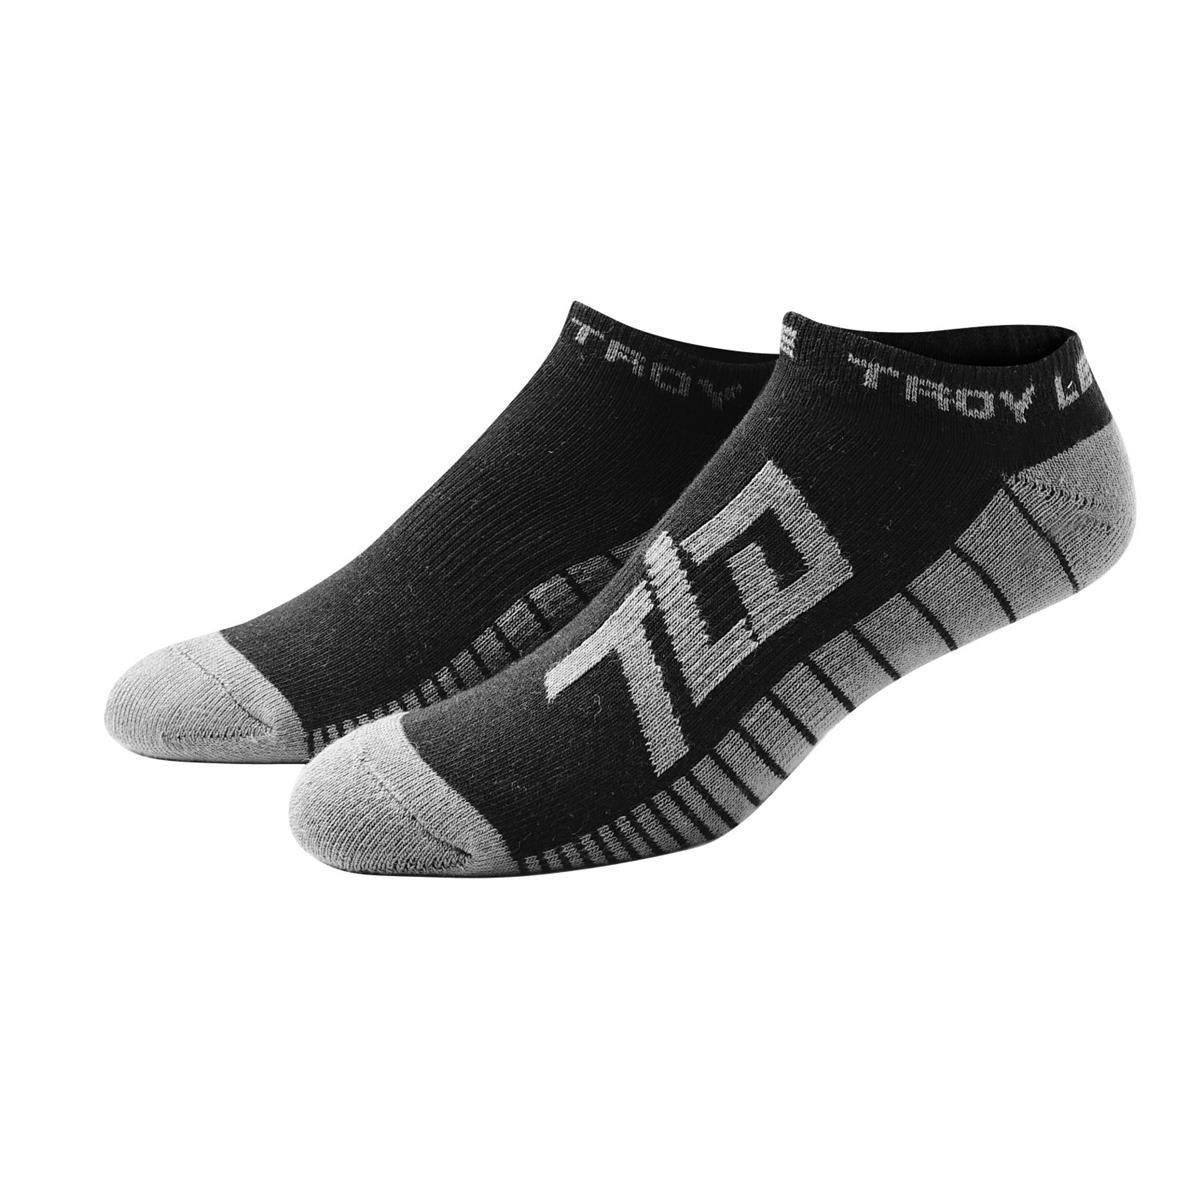 Troy Lee Designs Socks Factory Ankle Black, 3 Pack